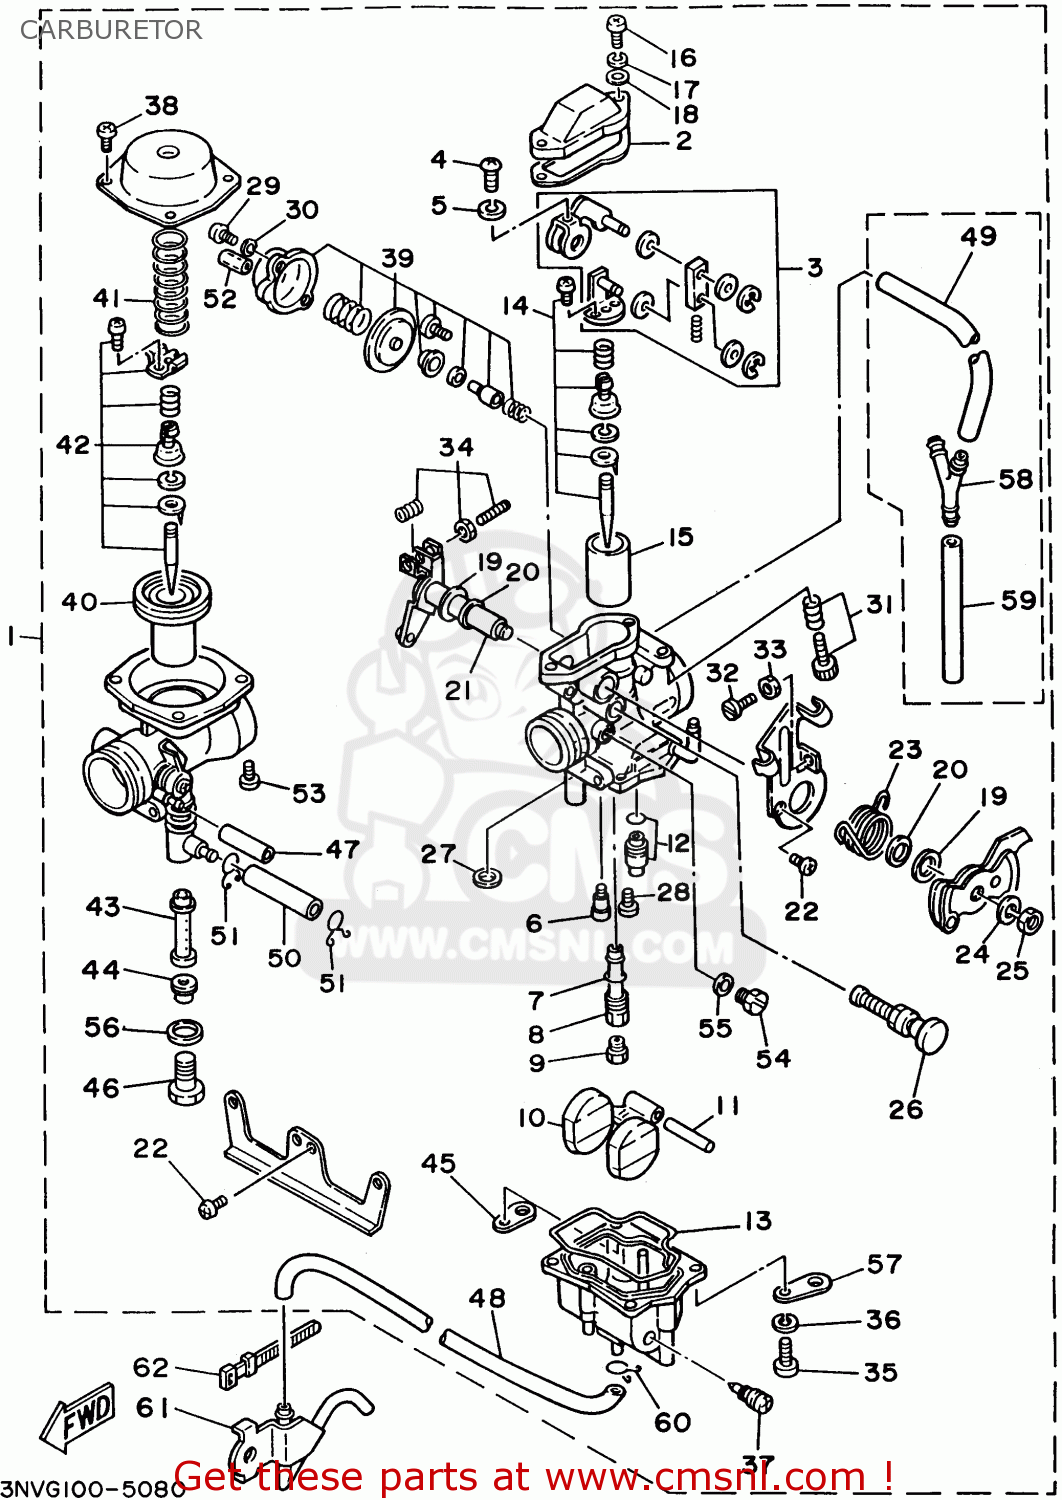 yamaha breeze carburetor diagram